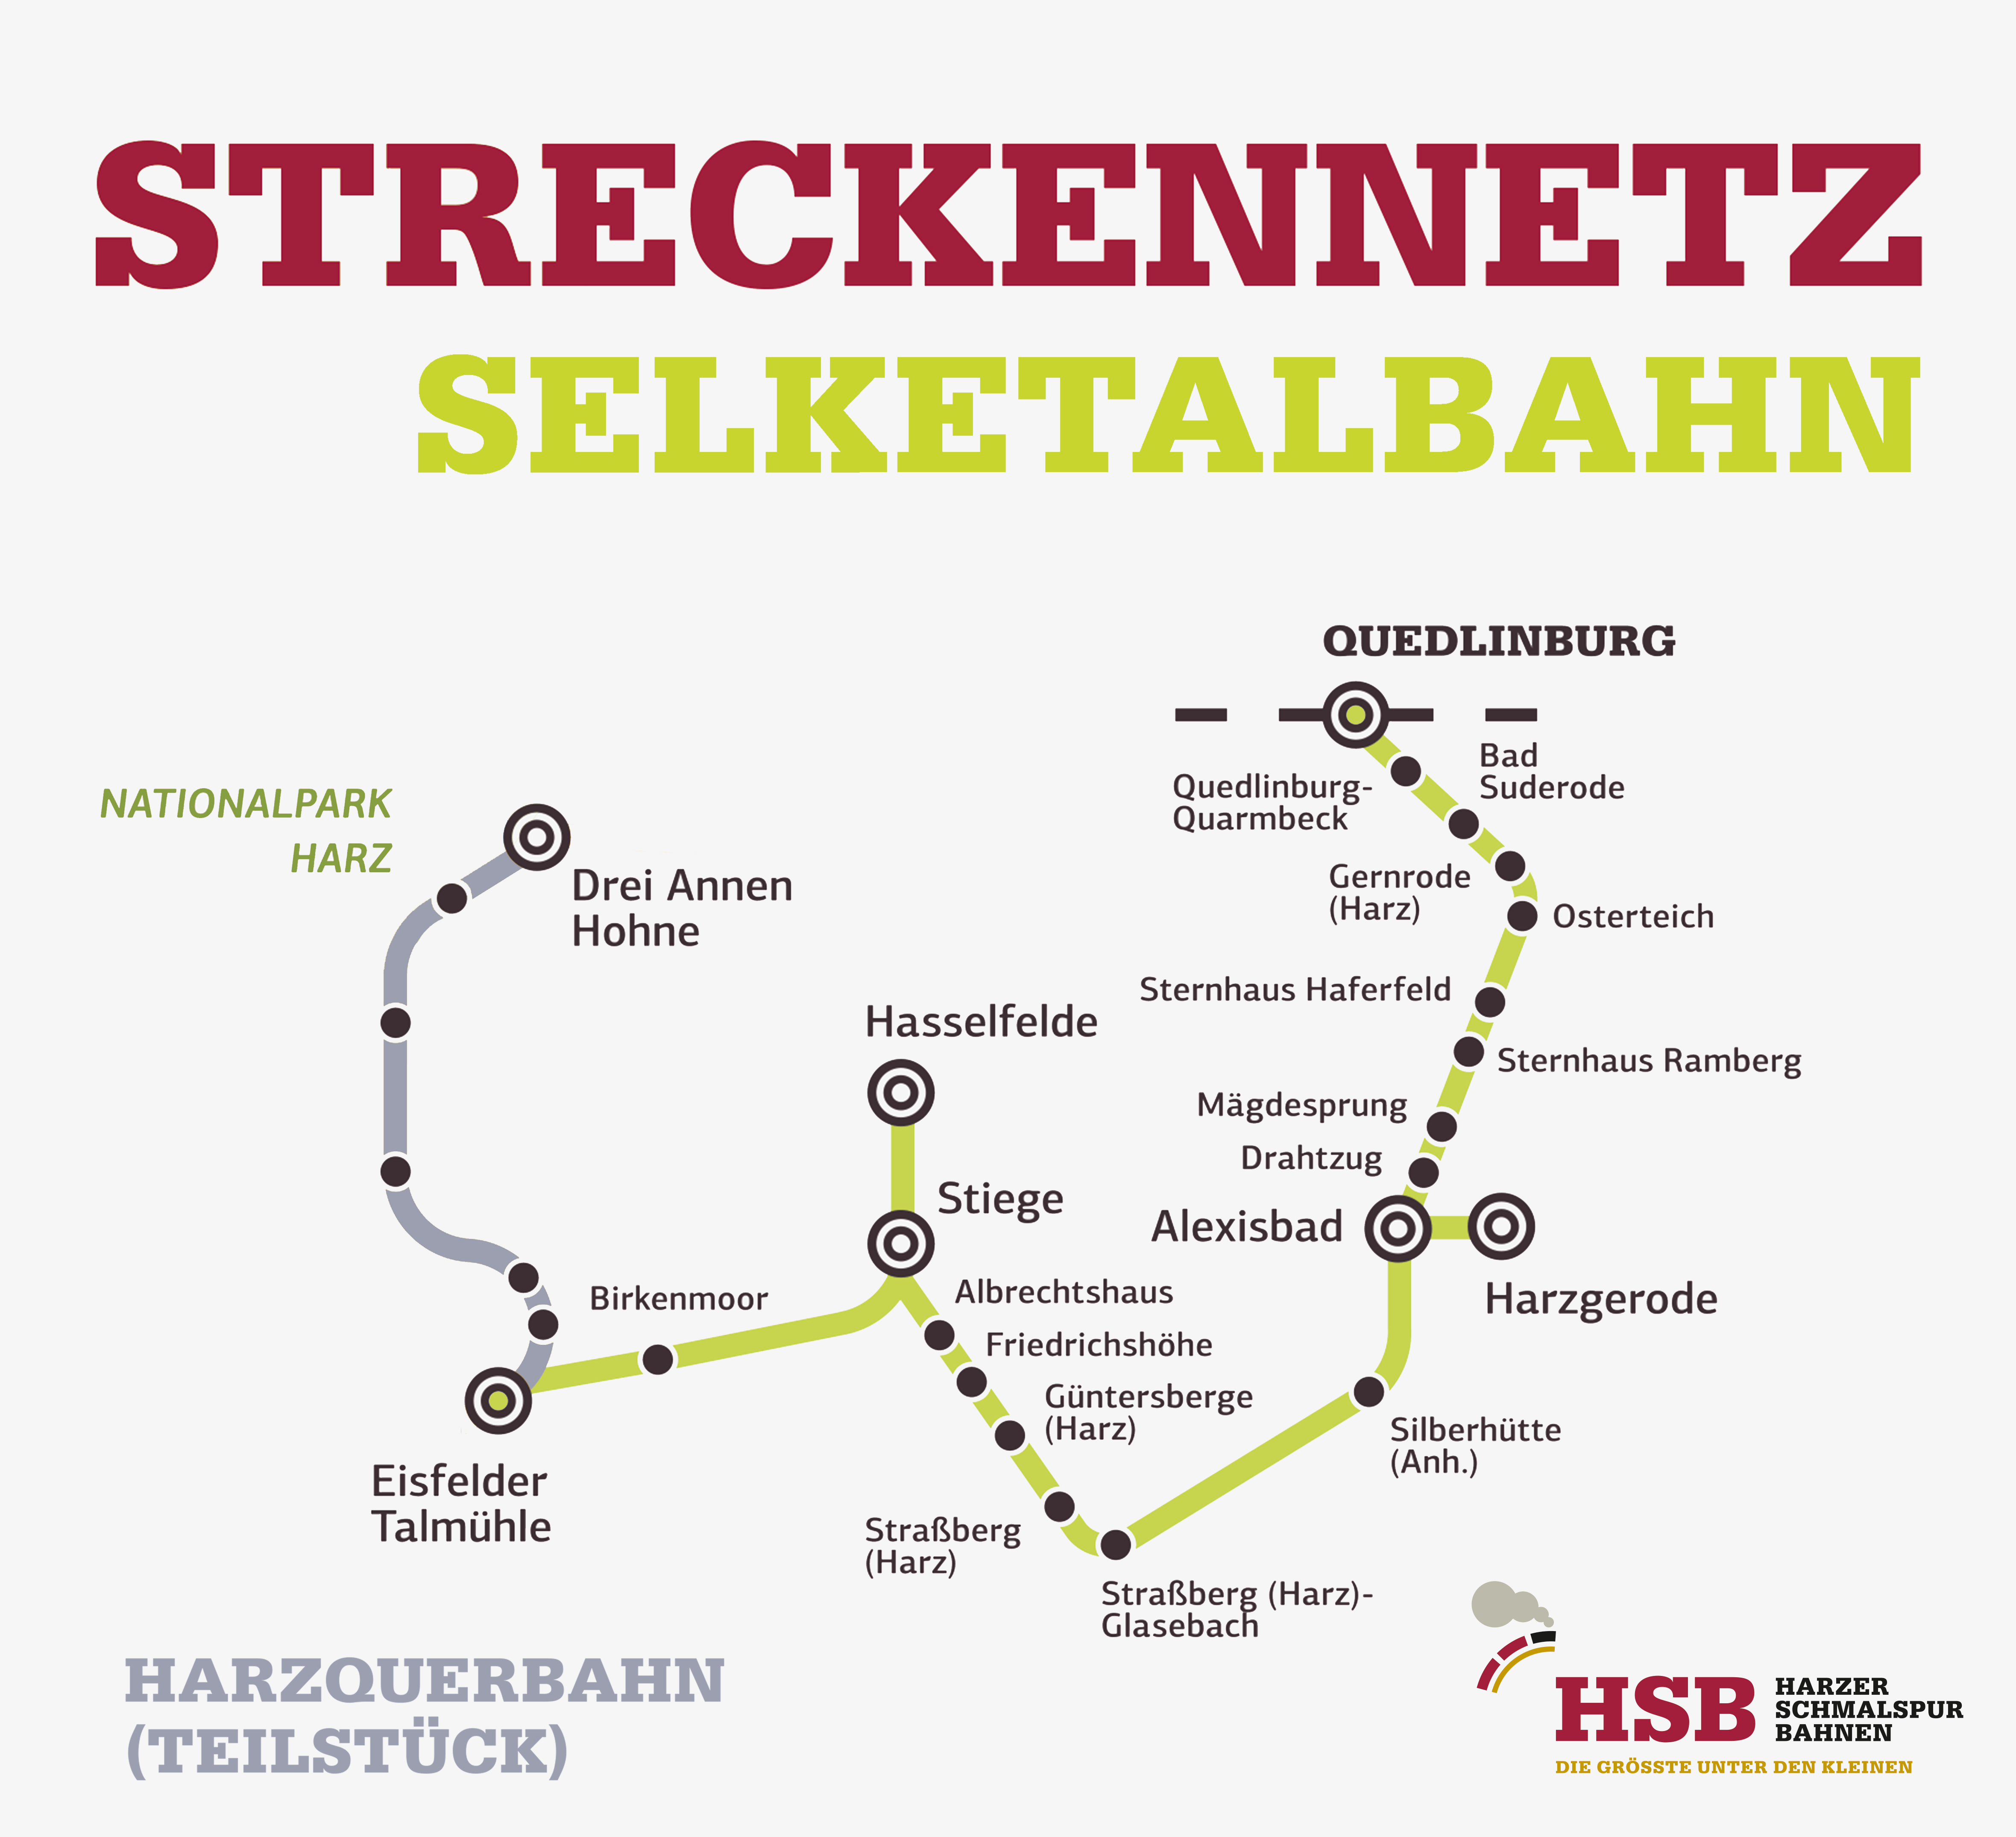 Winterfahrplan Selketalbahn bis 31. März 2023